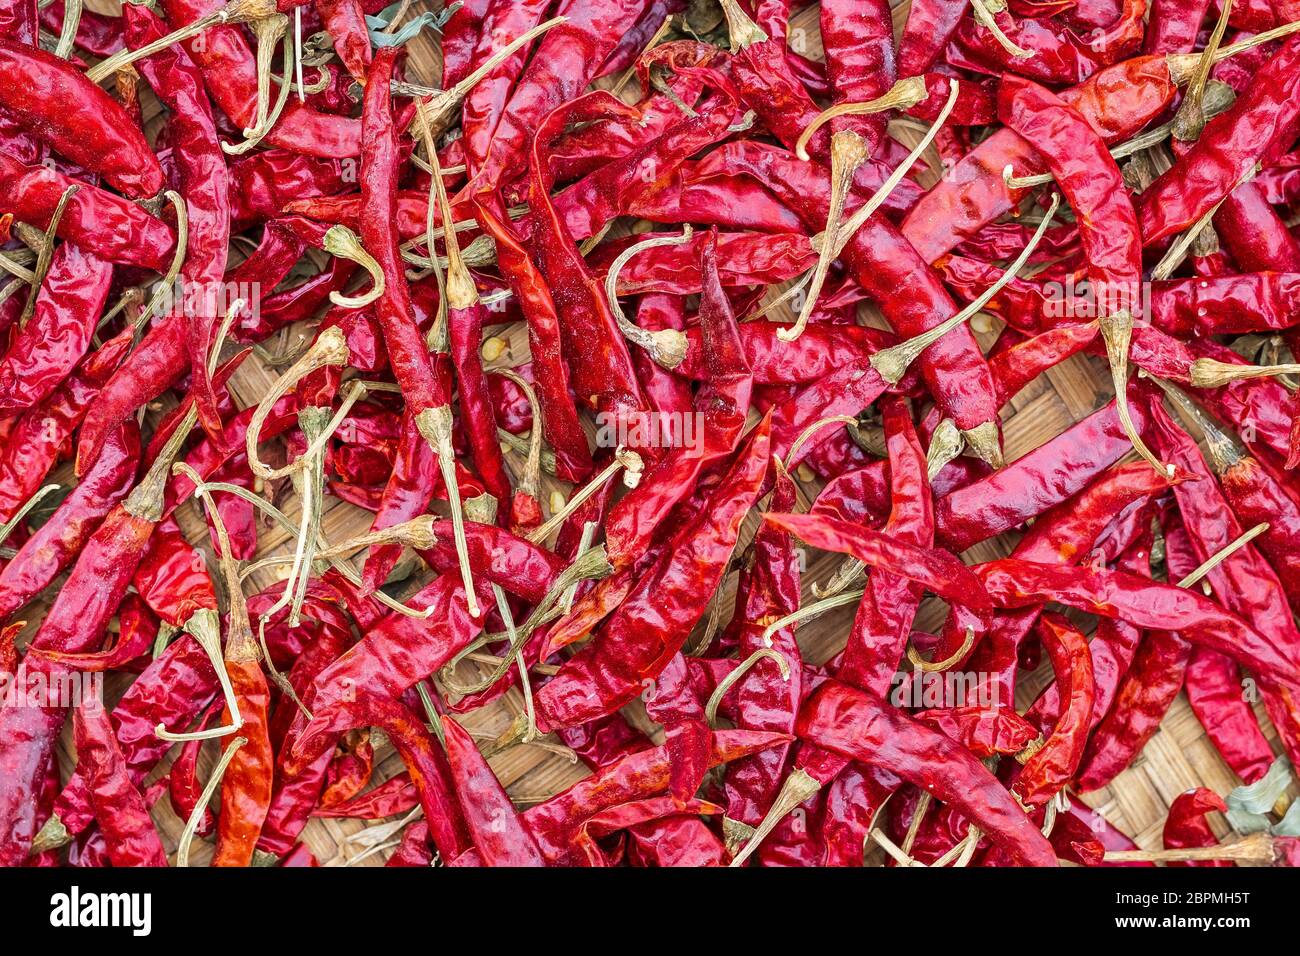 Nahaufnahme Stapel von luftgetrockneten roten Chili-Paprika Hintergrund. Scharf und würzig trockene rote Chilischoten. Stockfoto